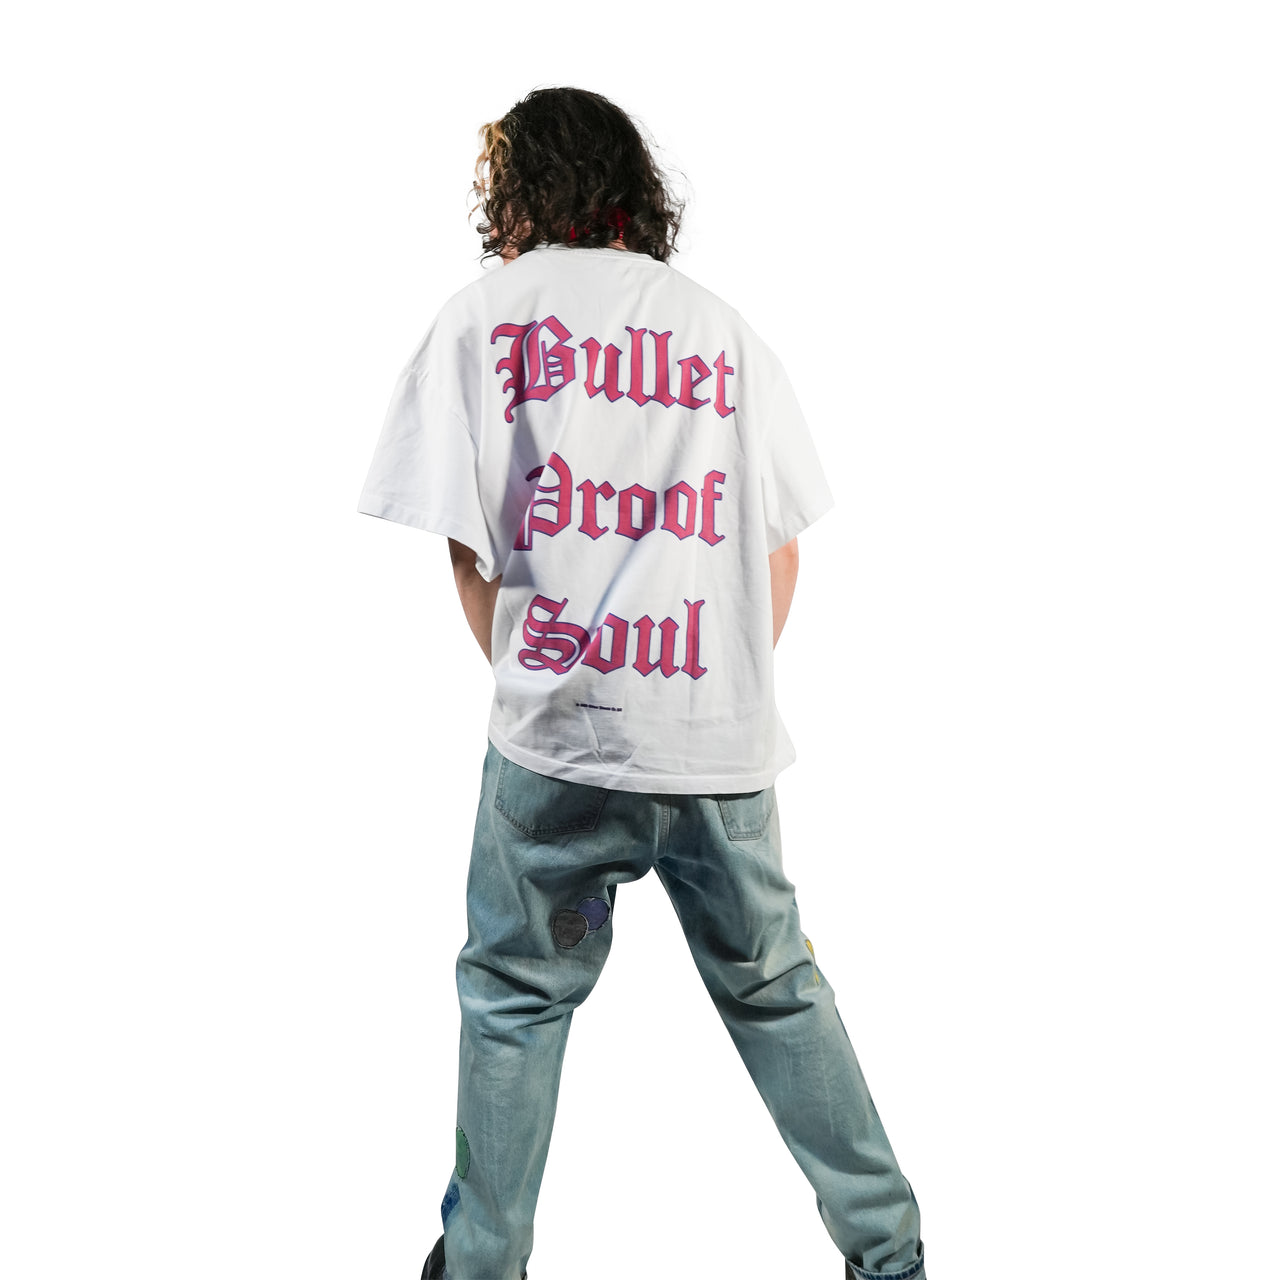 Bullet Proof Soul T-Shirt